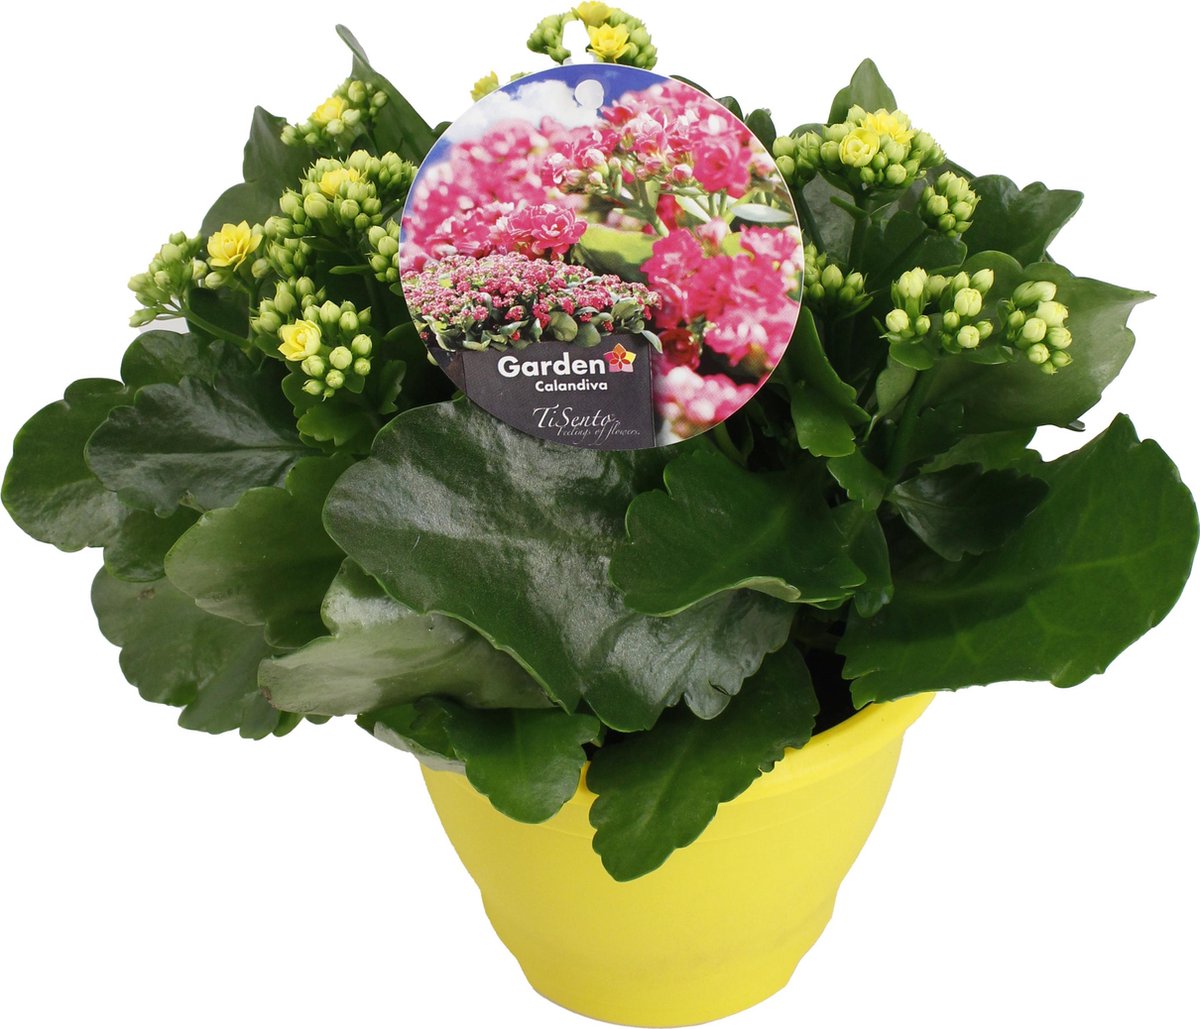 TiSento Calandiva plant – 17 cm – 3 stuks in gekleurde plastic pot | bol.com